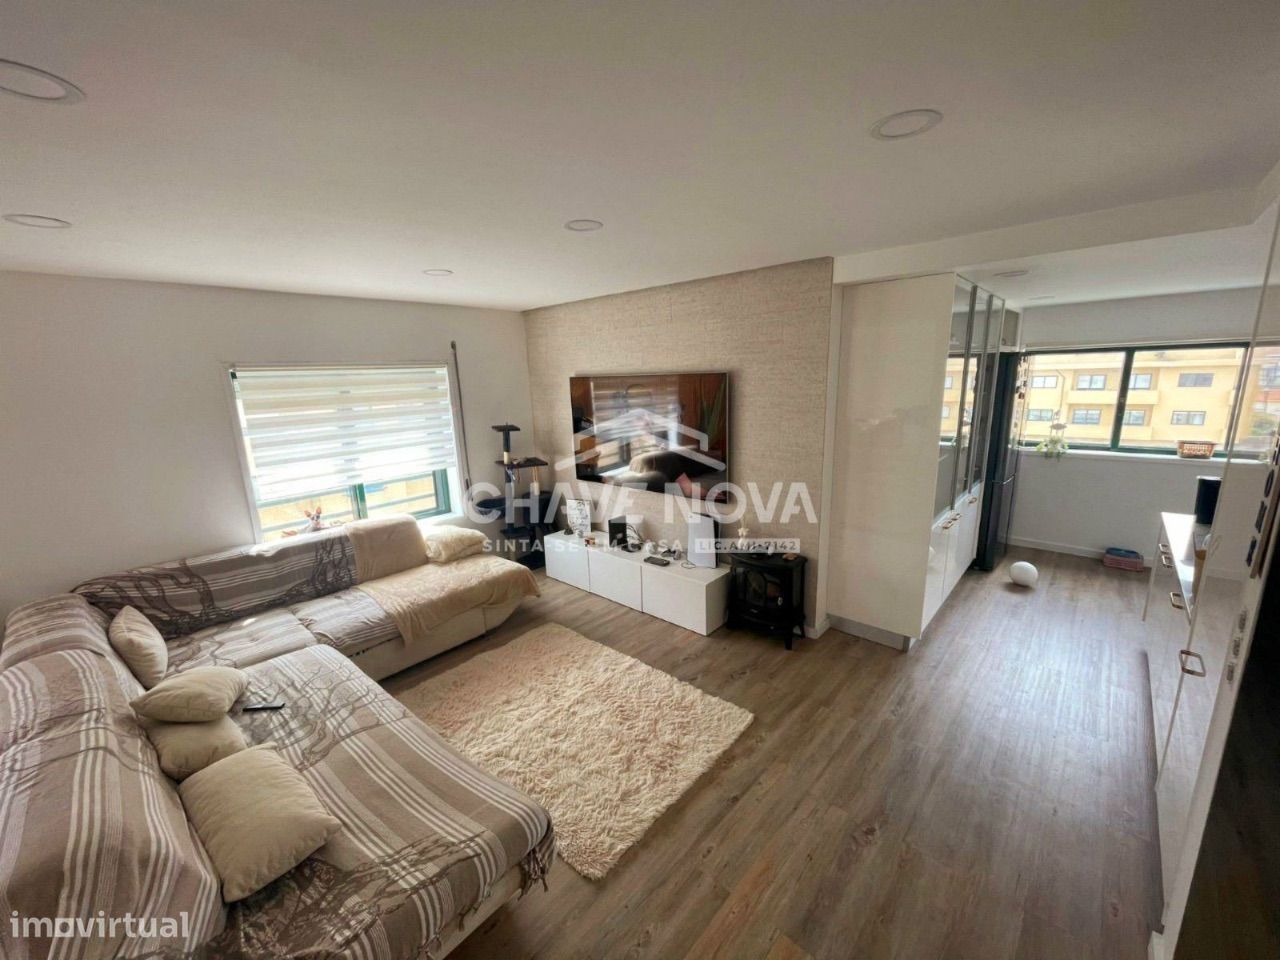 Apartamento T3, para Venda por 279.000€ em Vila Nova de Gaia, Canidelo